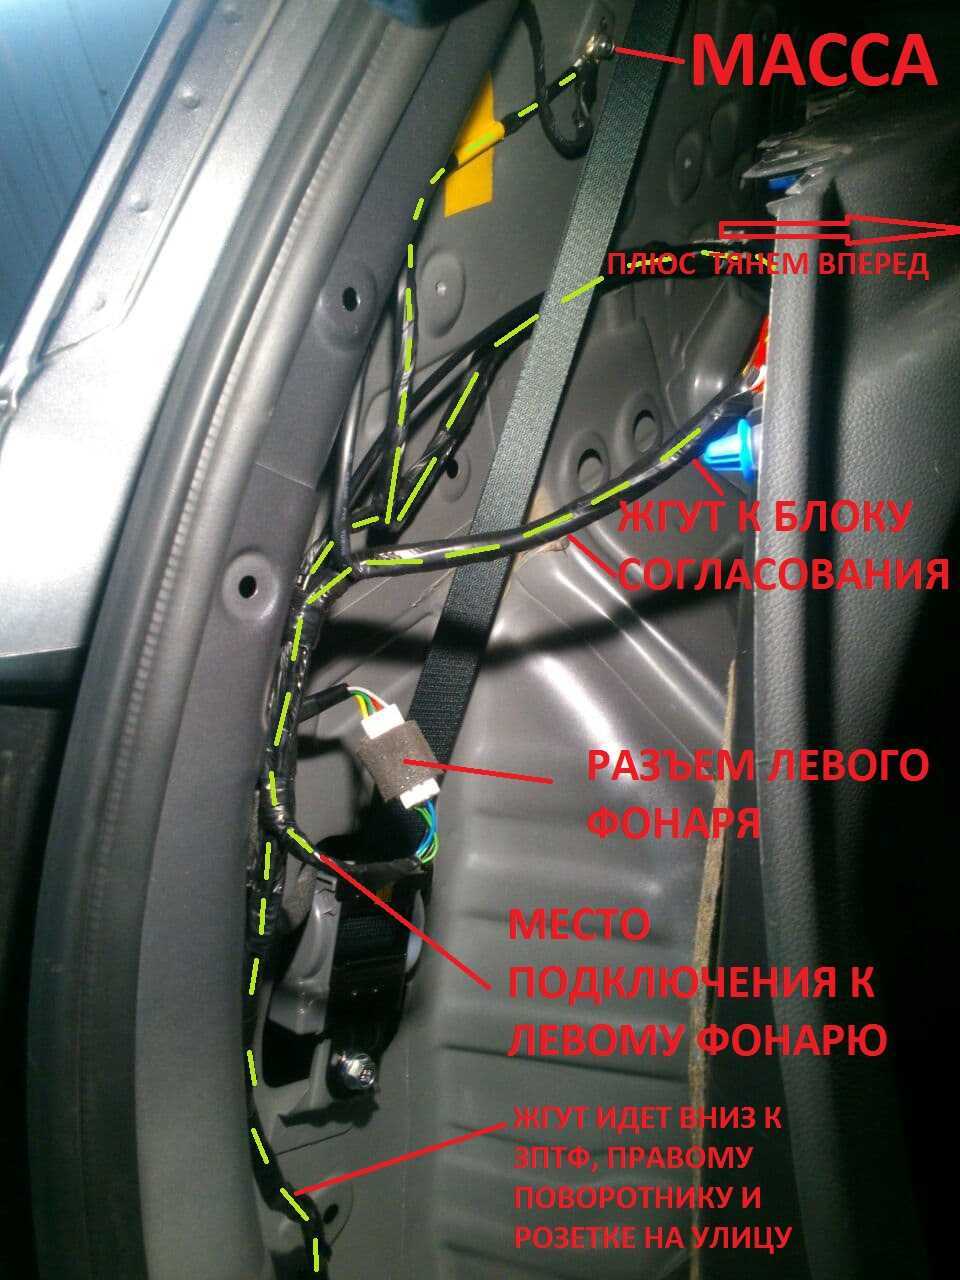 Хендай крета 1.6/2.0 плюсы и минусы авто на основании отзывов владельцев, стоит ли покупать подержанный бу автомобиль на вторичном рынке - autotopik.ru